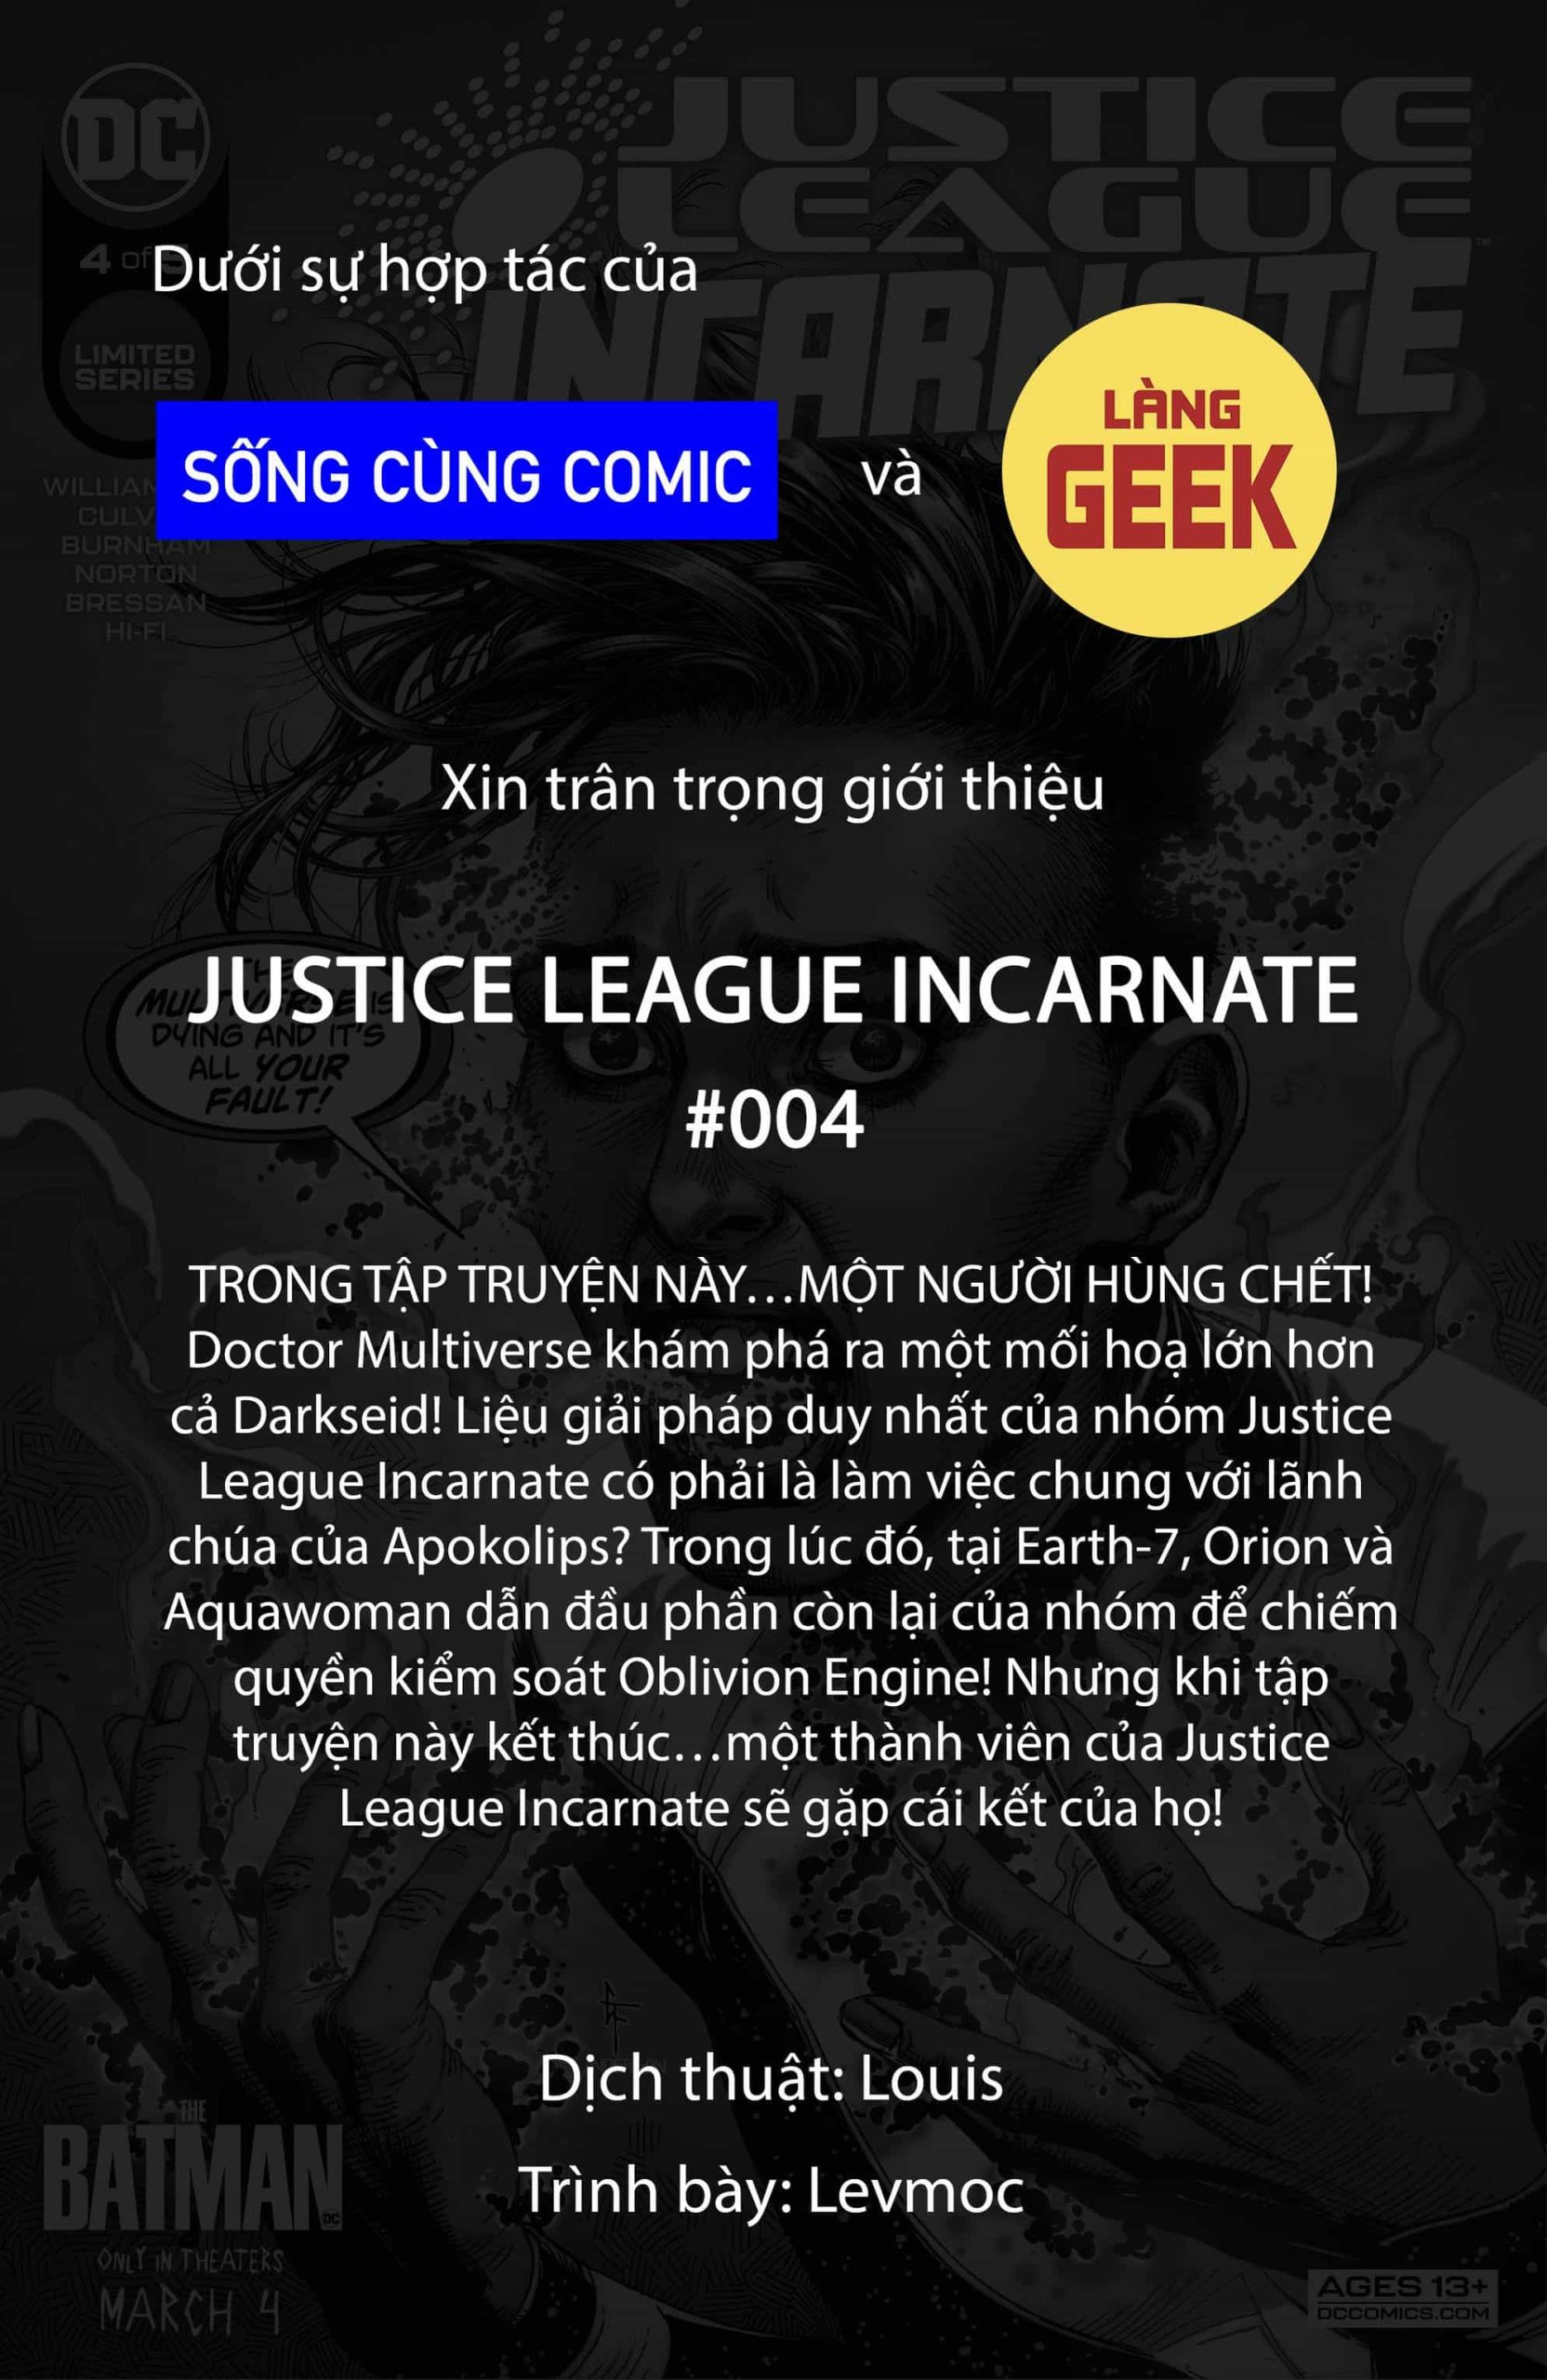 https://langgeek.net/wp-content/webpc-passthru.php?src=https://langgeek.net/wp-content/uploads/2022/02/Justice-League-Incarnate-2021-004-001-scaled.jpg&nocache=1